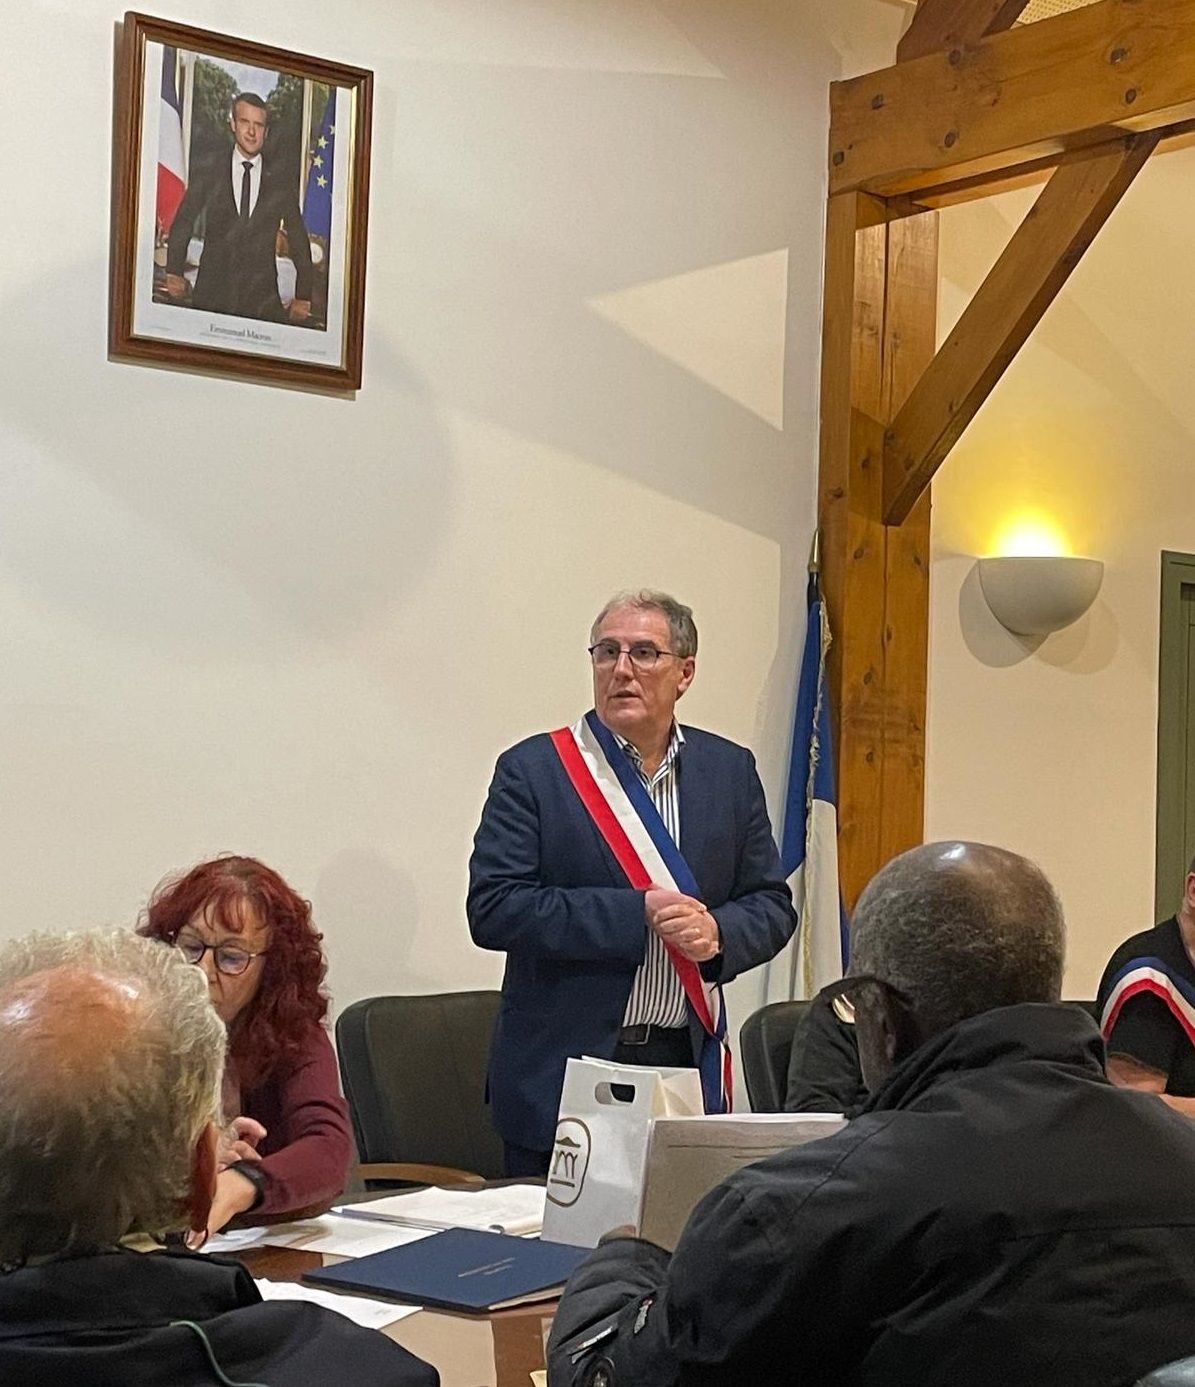 Ronquerolles, vendredi 9 février. Patrick Premel a été élu maire par un vote du conseil municipal. Il succède ainsi à Jean-Marie Duhamel, démissionnaire. (DR)